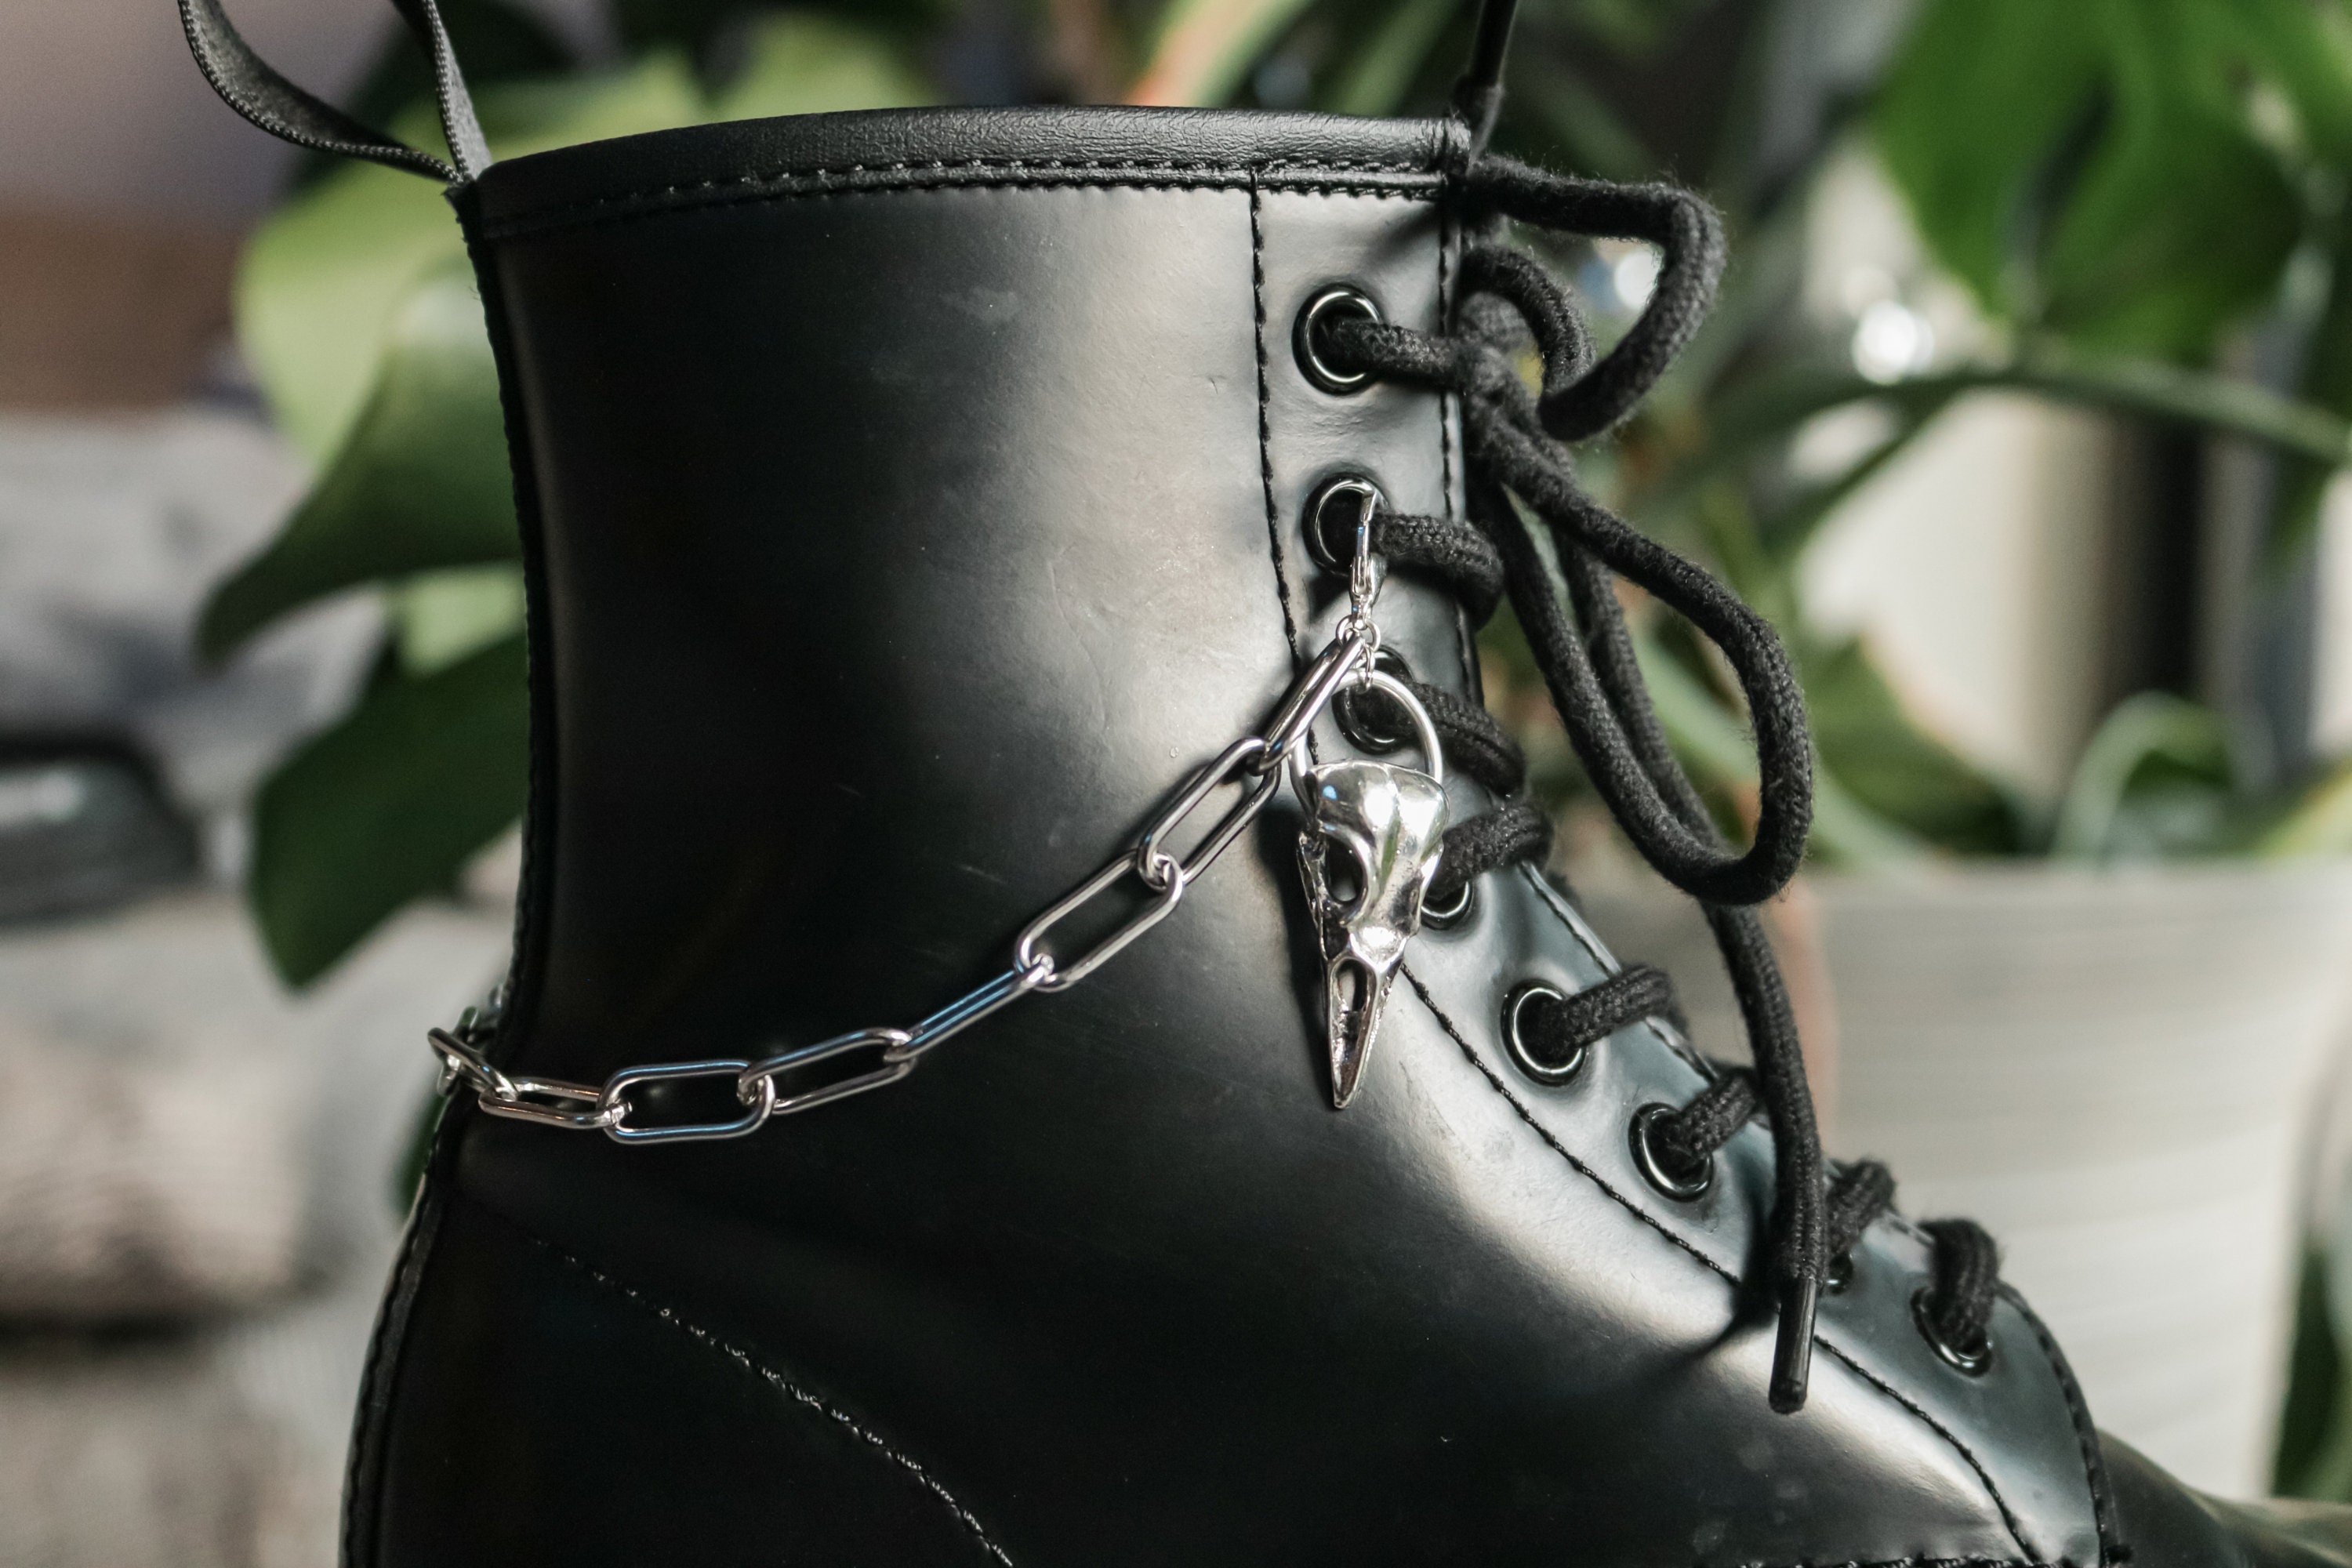 hanaiette Punk Shoe Charms Gun-Black Metal Spikes for Clogs Sandals DIY Rivets Goth Shoes Decorations Accessories